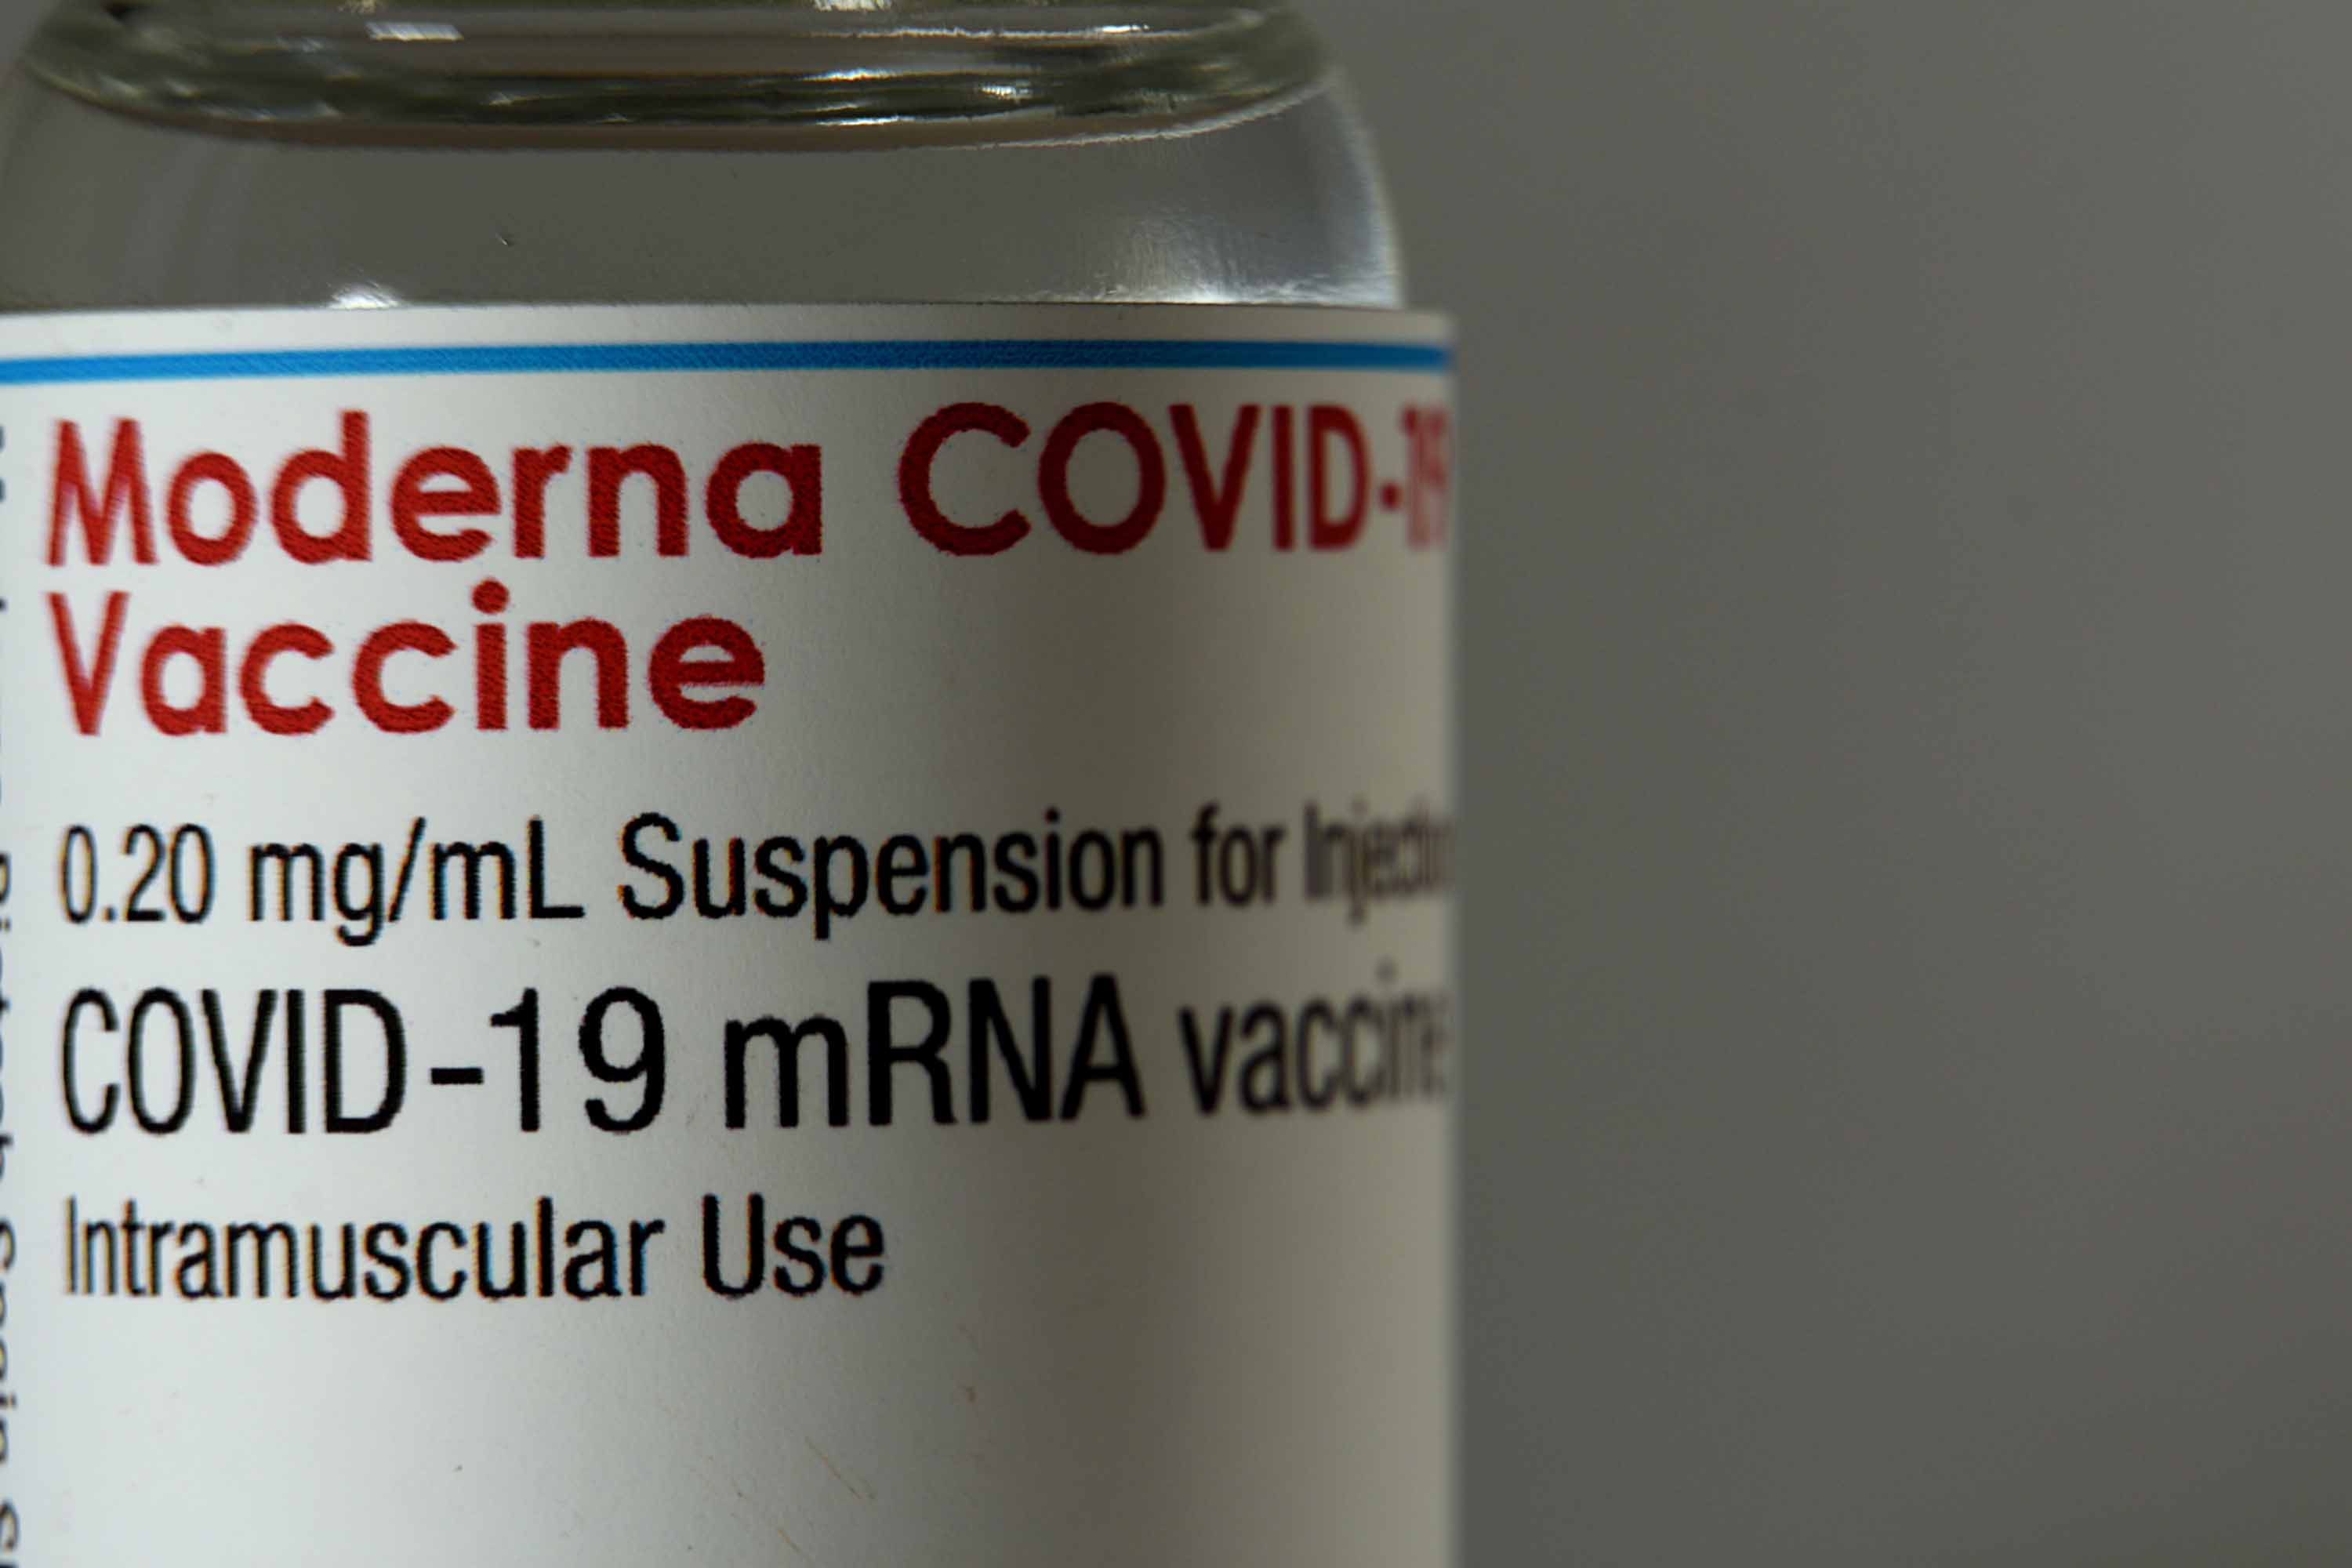 A close-up shows a vial of the Moderna vaccine.